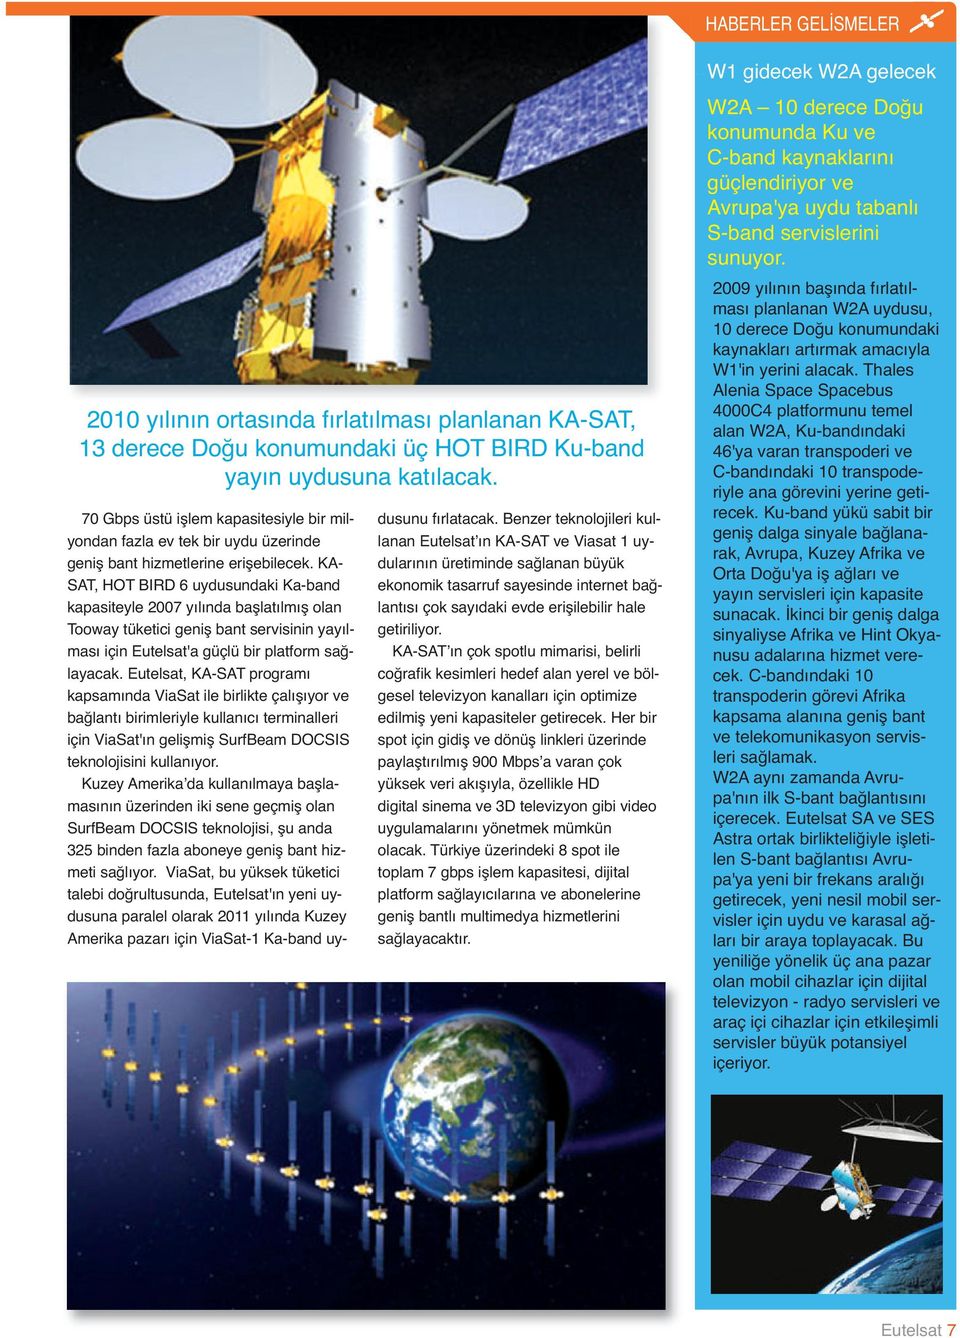 KA- SAT, HOT BIRD 6 uydusundaki Ka-band kapasiteyle 2007 yılında başlatılmış olan Tooway tüketici geniş bant servisinin yayılması için Eutelsat'a güçlü bir platform sağlayacak.